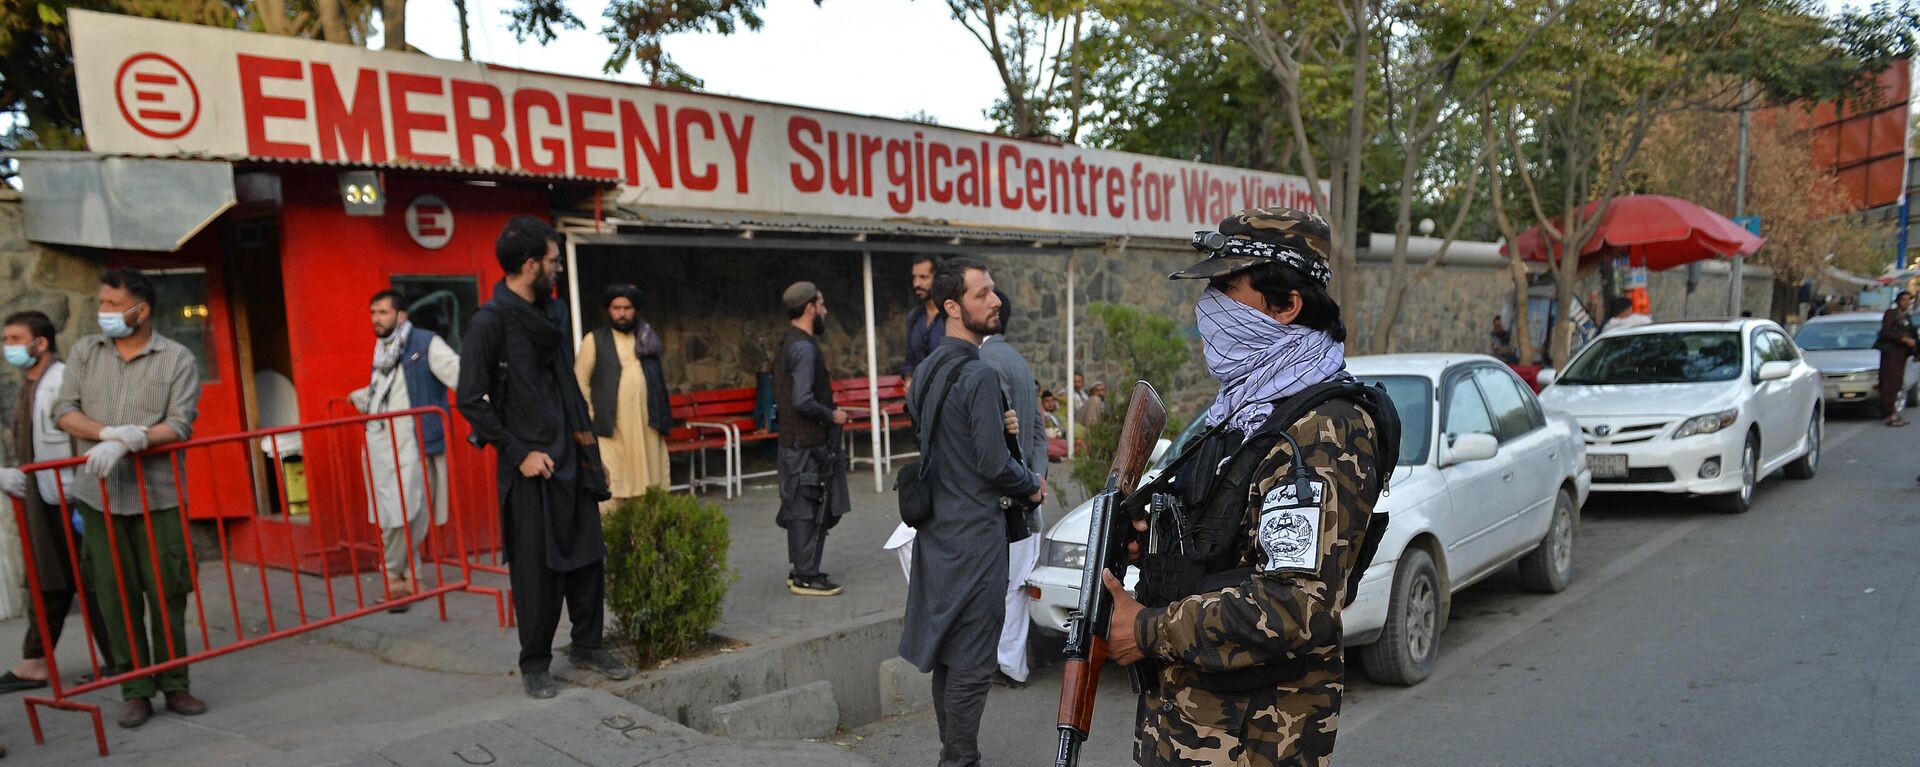 Pripadnici pokreta Taliban i medicinsko osoblje ispred ulaza u bolnicu čekaju dolazak žrtava nakon eksplozije u džamiji u Kabulu - Sputnik Srbija, 1920, 03.10.2021